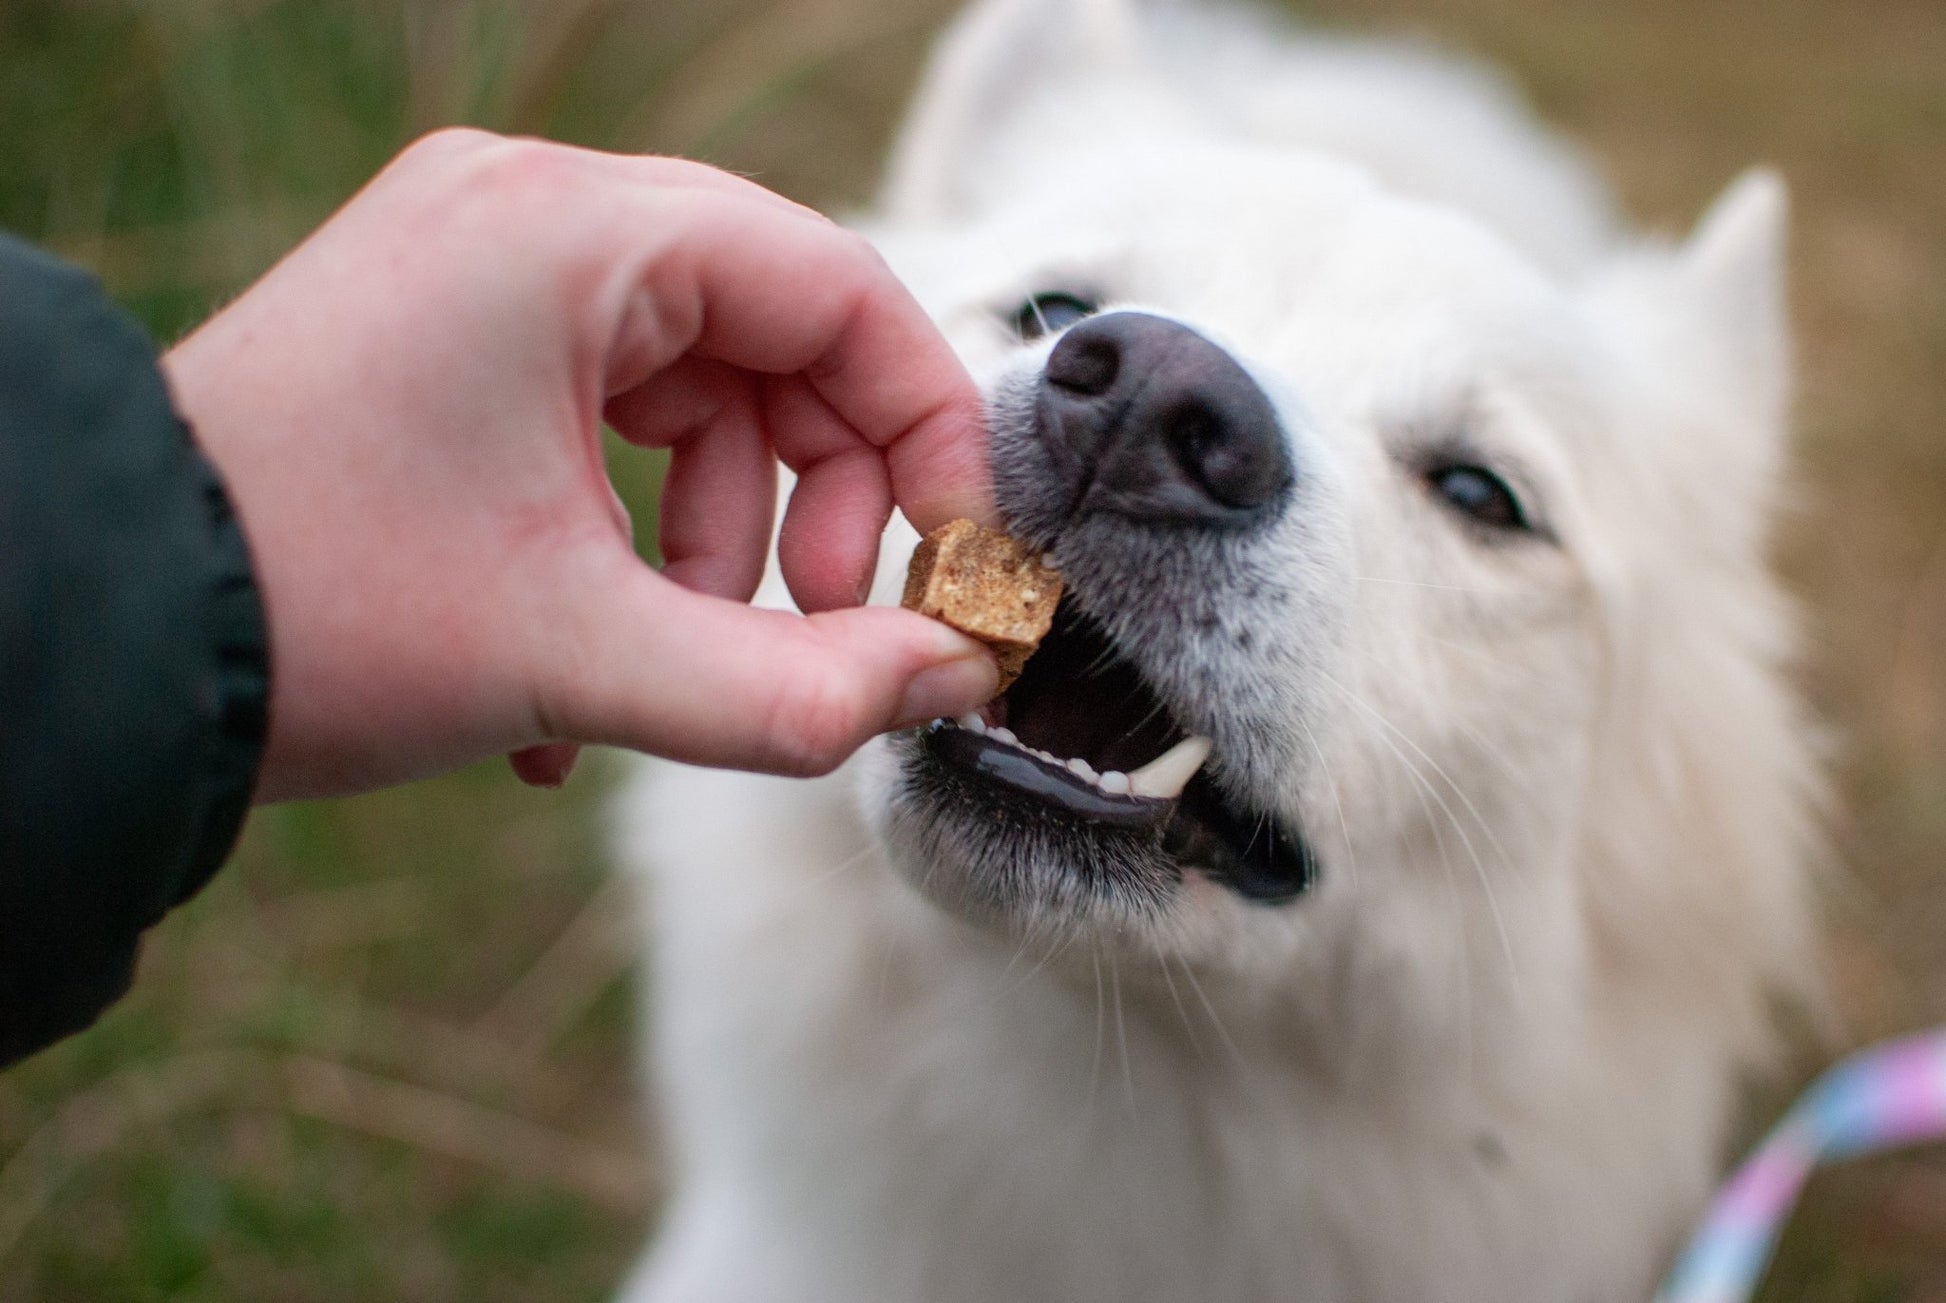 Kylling & Chiafrø - 100% naturlig hundegodbid - Confetti Dogs